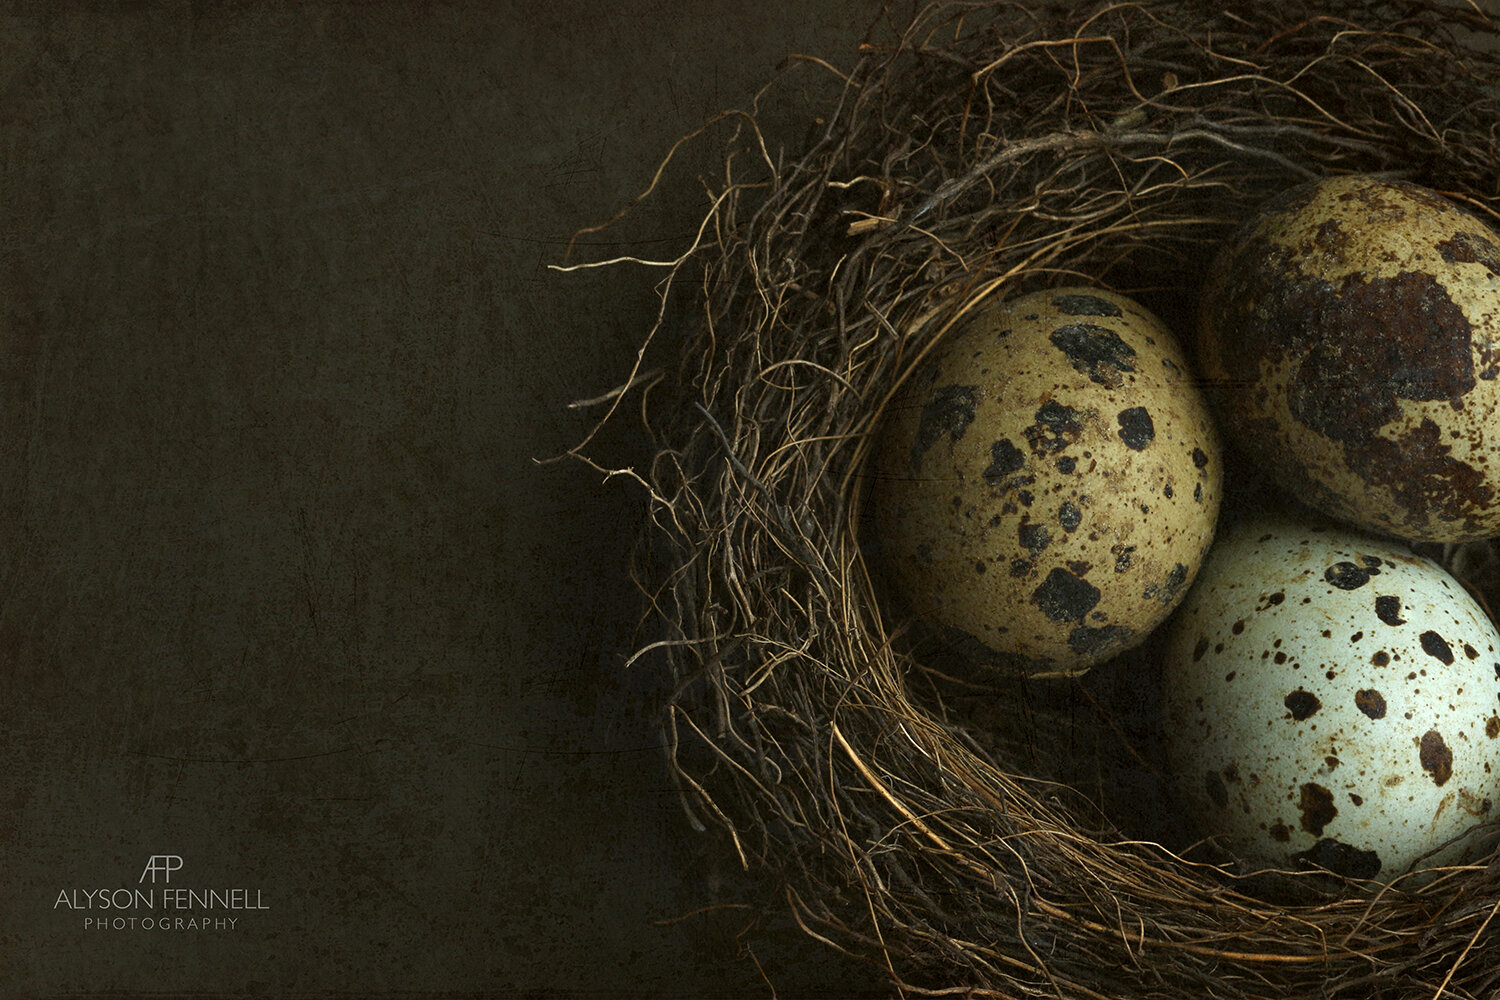 Bird's Nest and Quail's Eggs